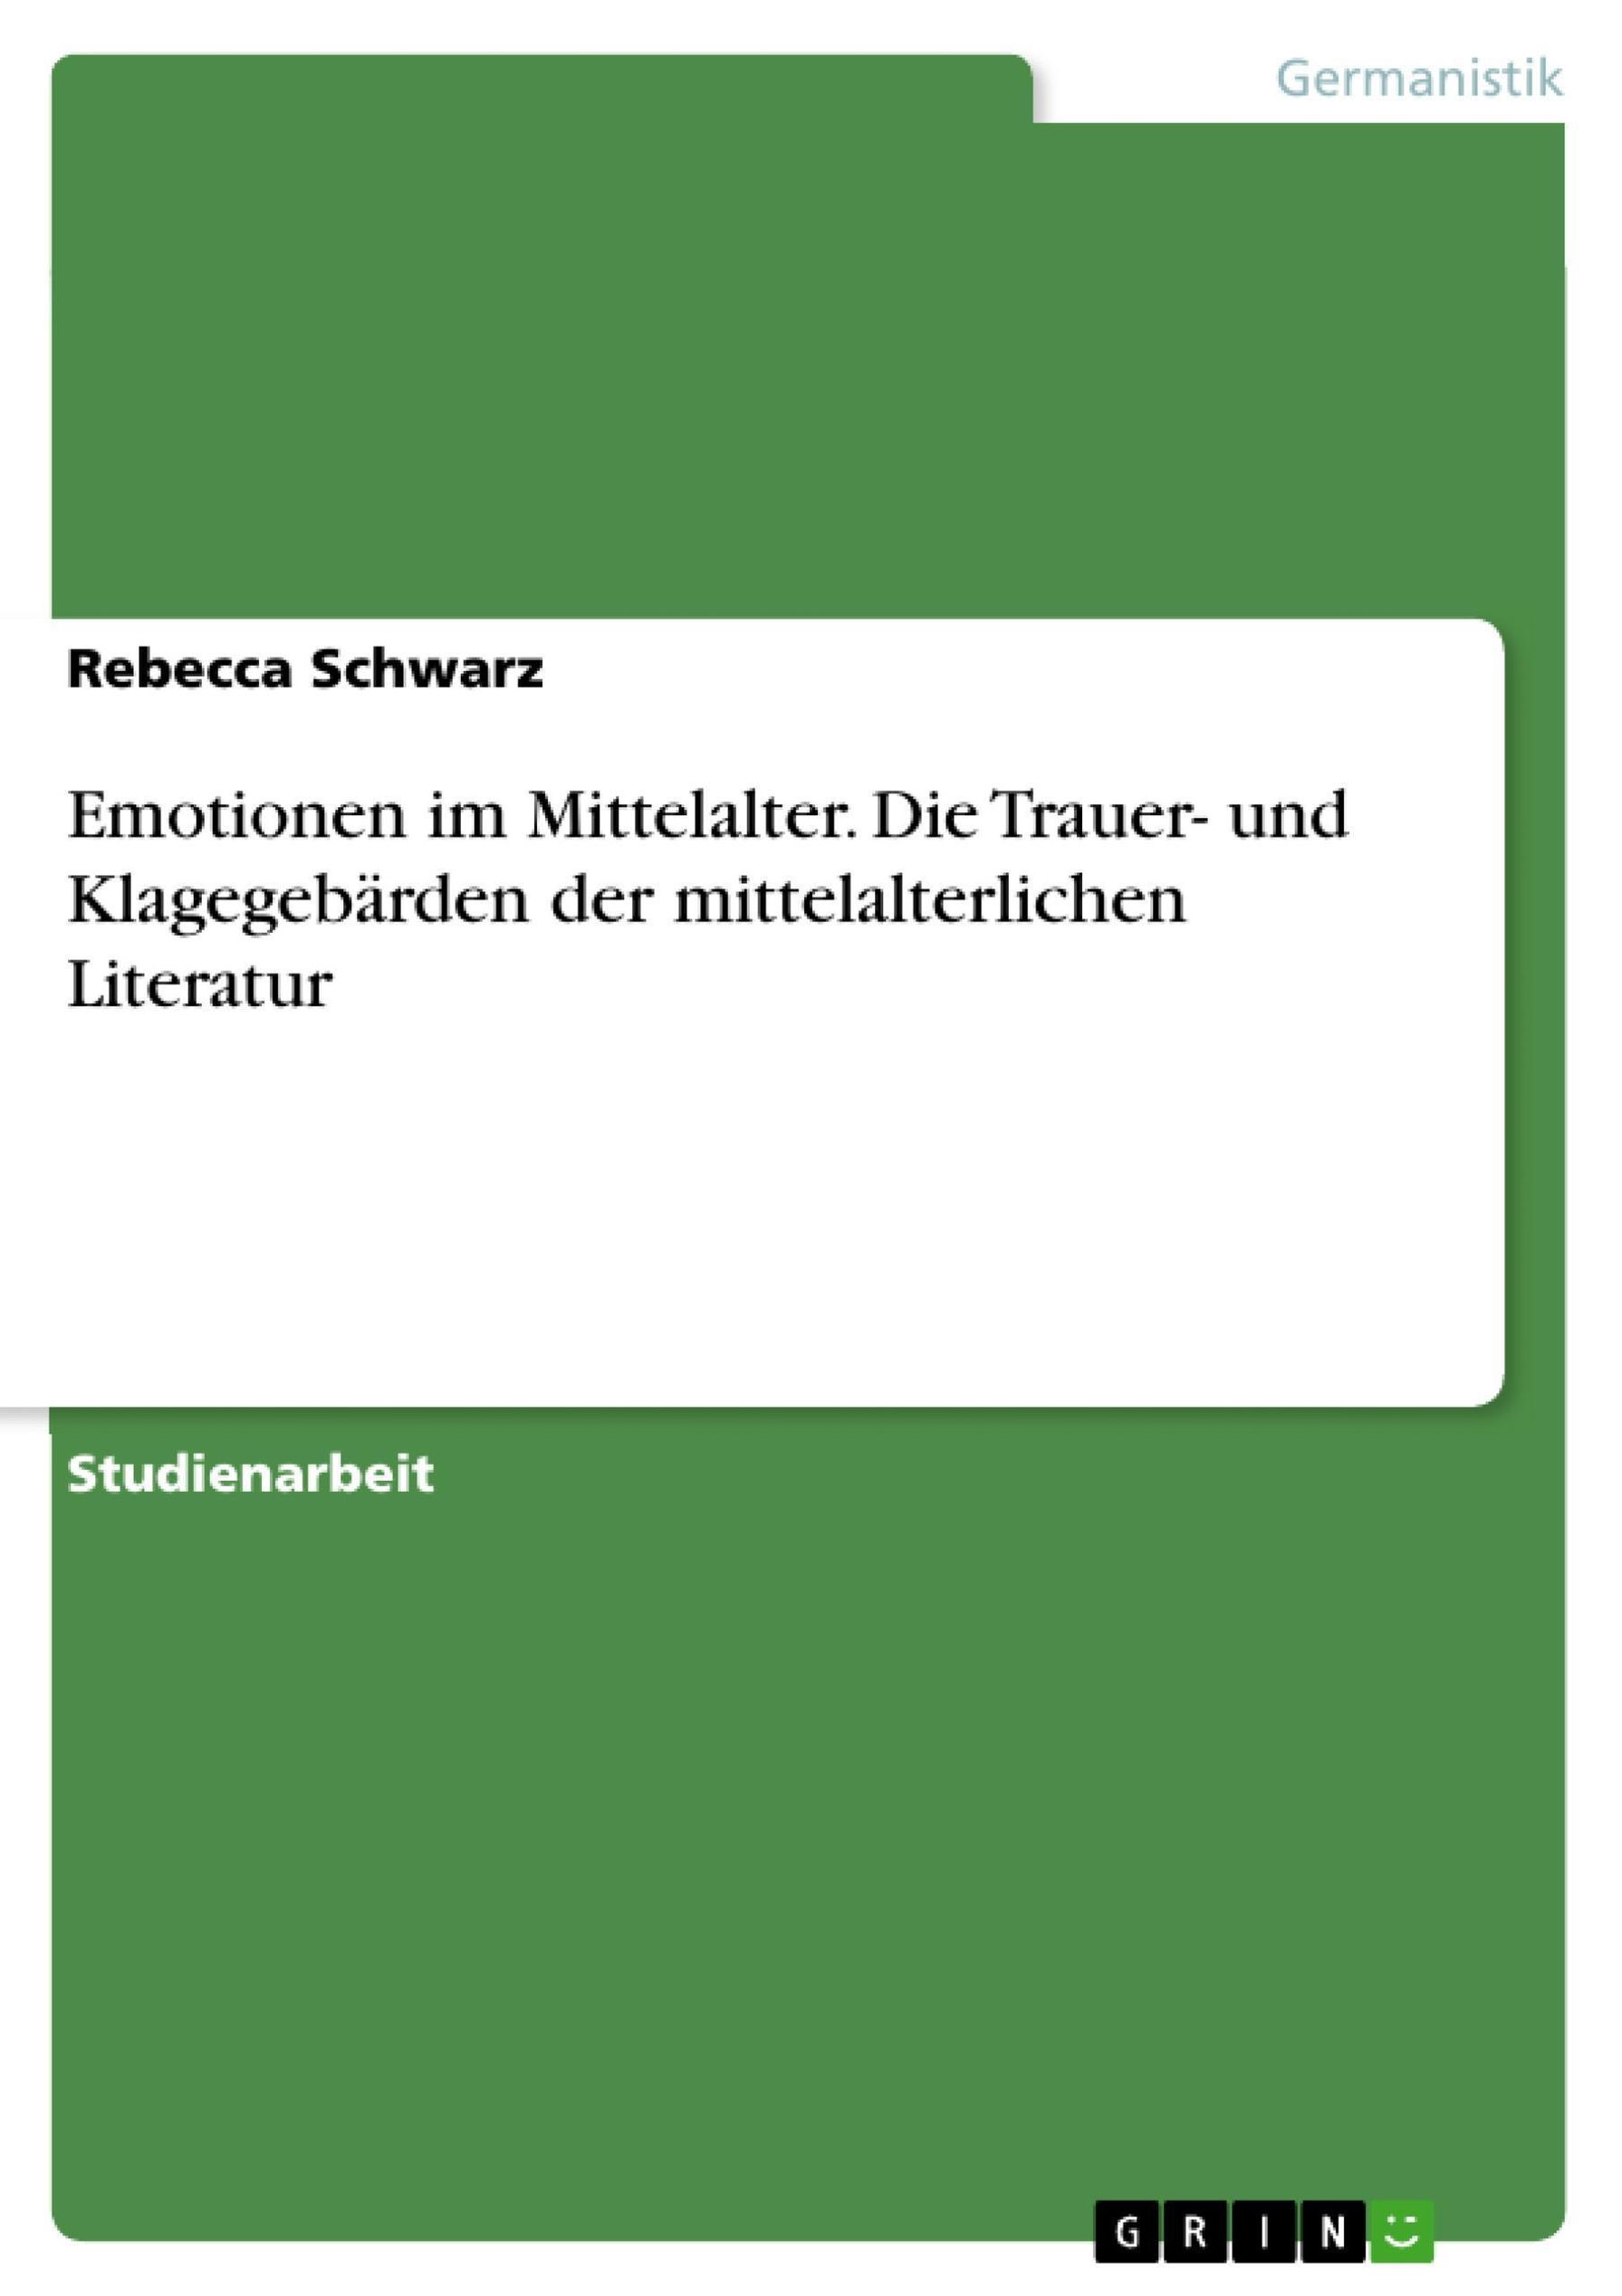 Emotionen im Mittelalter. Die Trauer- und Klagegebärden der mittelalterlichen  Literatur eBook v. Rebecca Schwarz | Weltbild